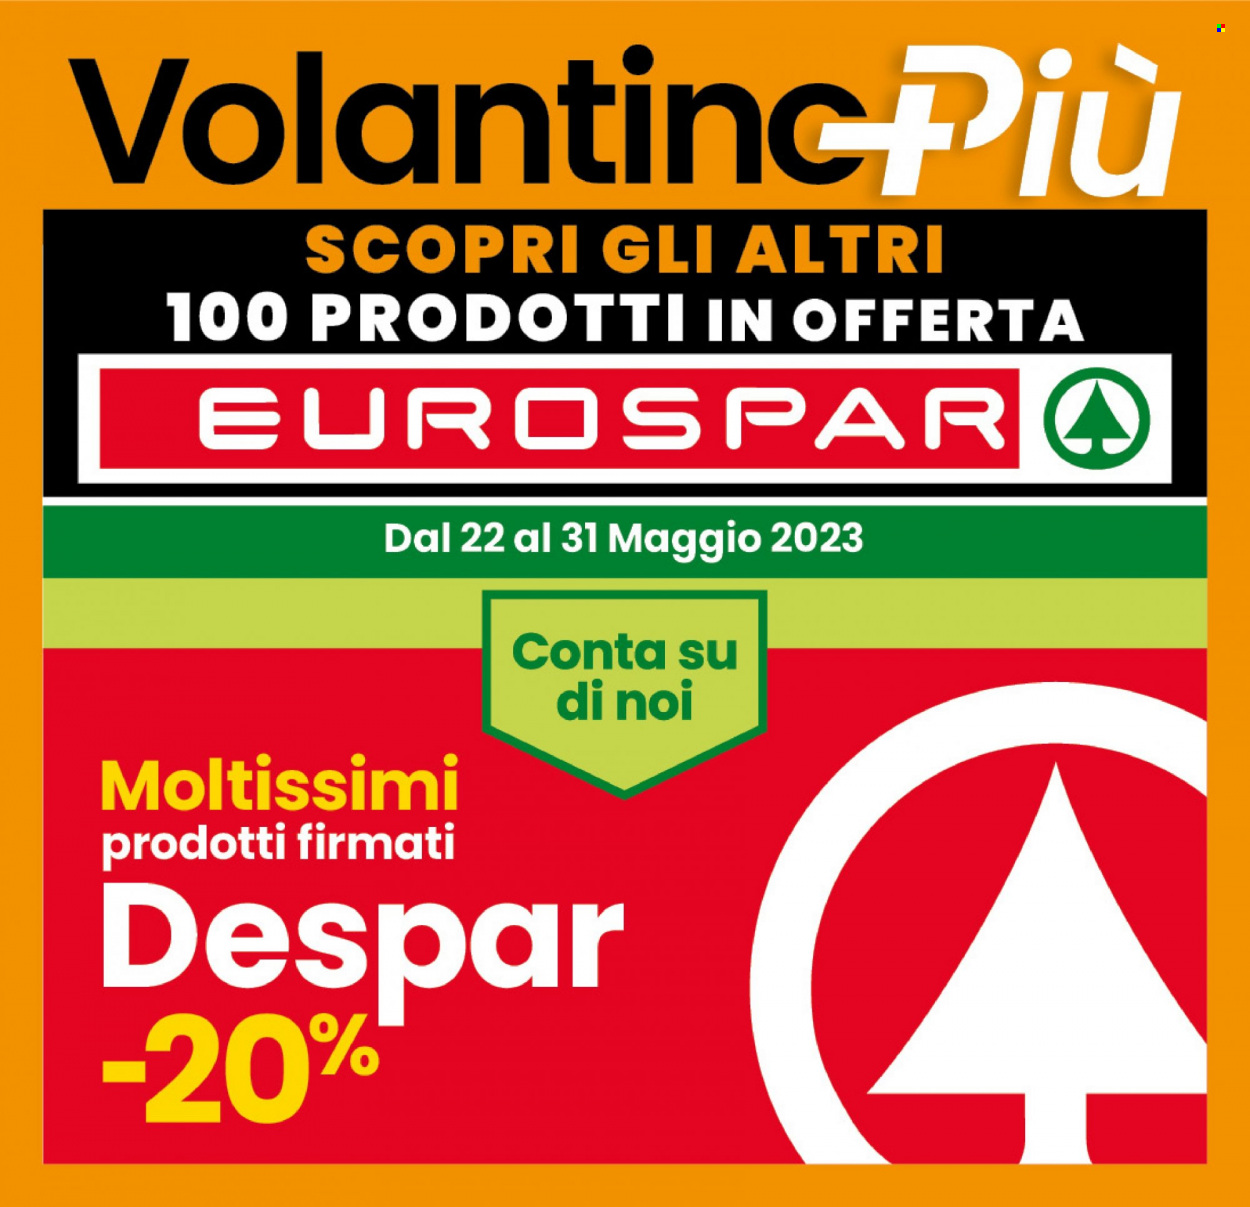 Volantino Eurospar - 22.5.2023 - 31.5.2023.